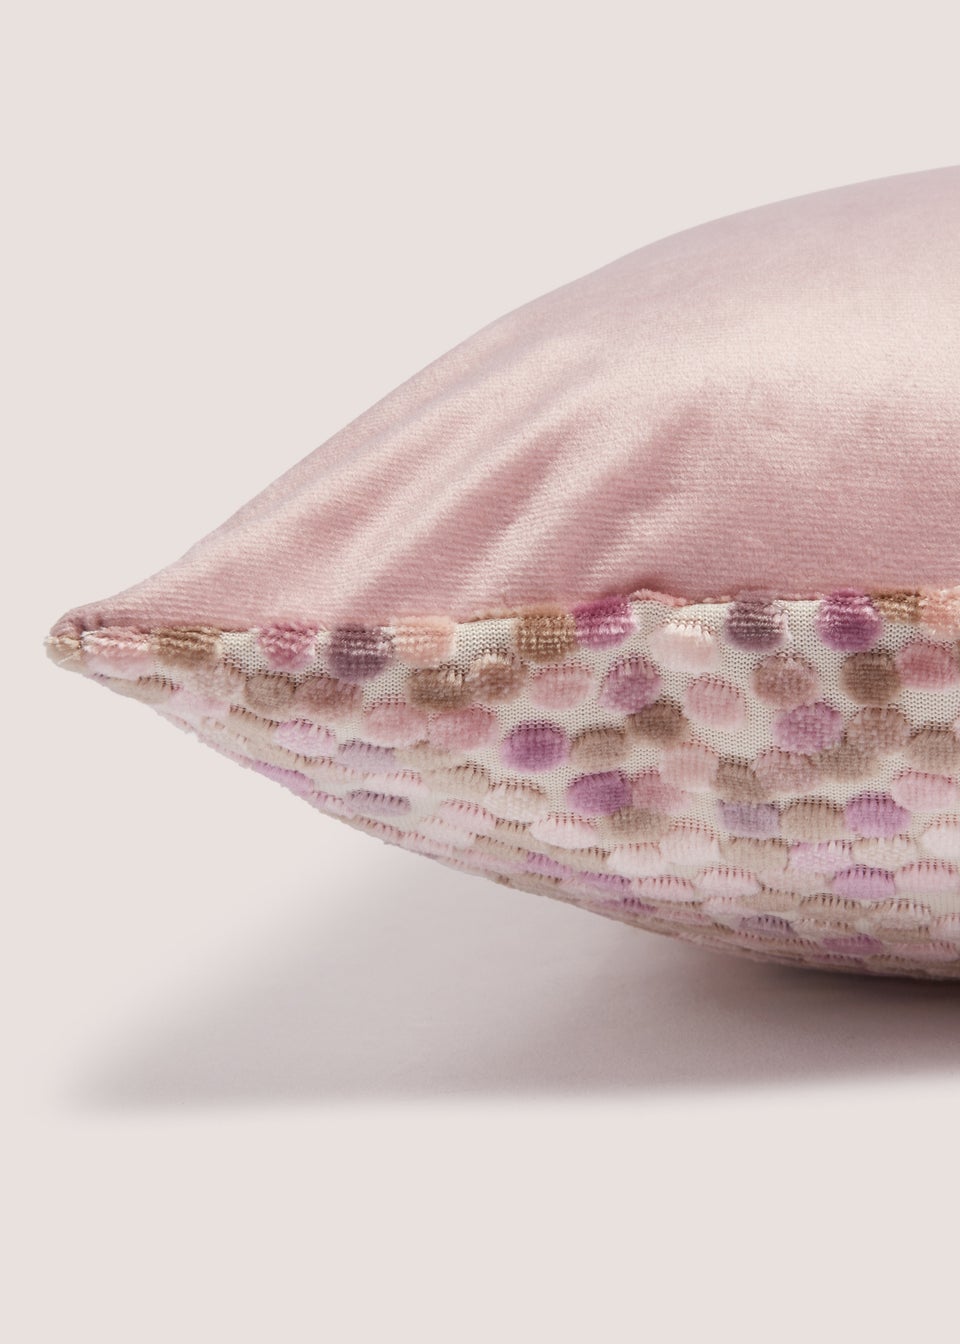 Pink Velvet Polka Dot Cushion (43cmx43cm)